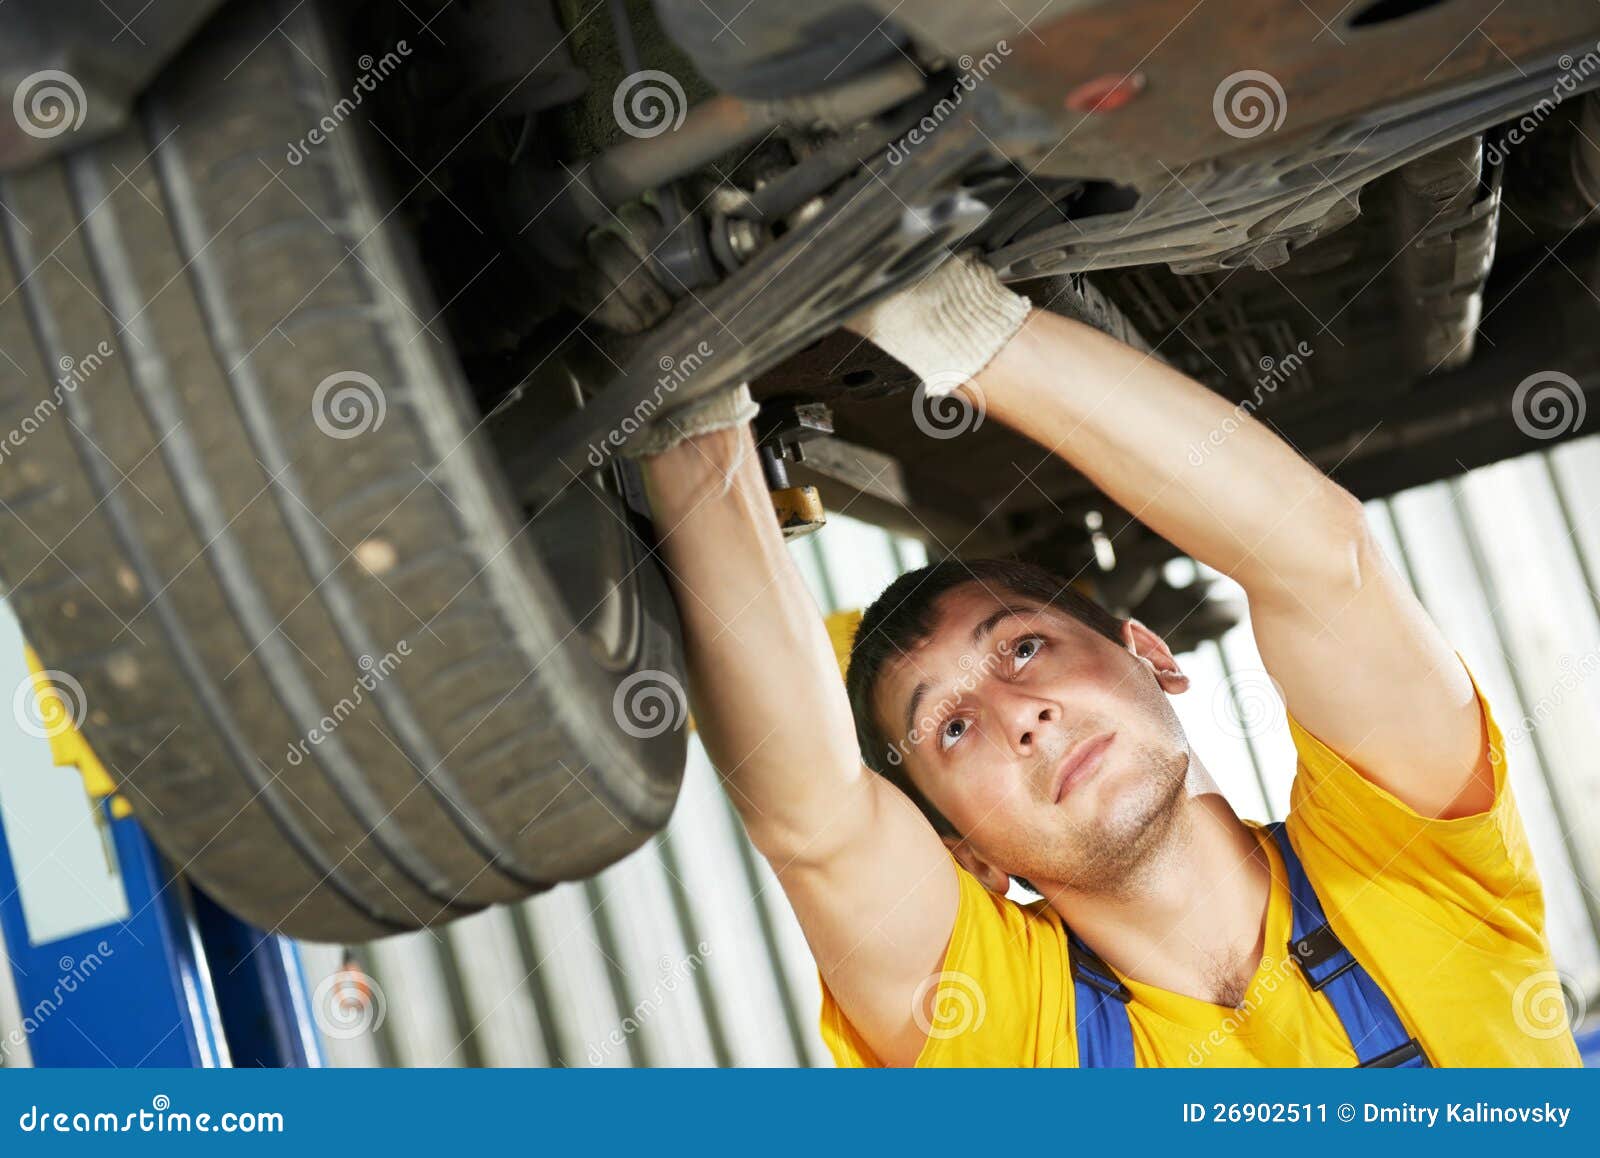 auto-mechanic-car-suspension-repair-work